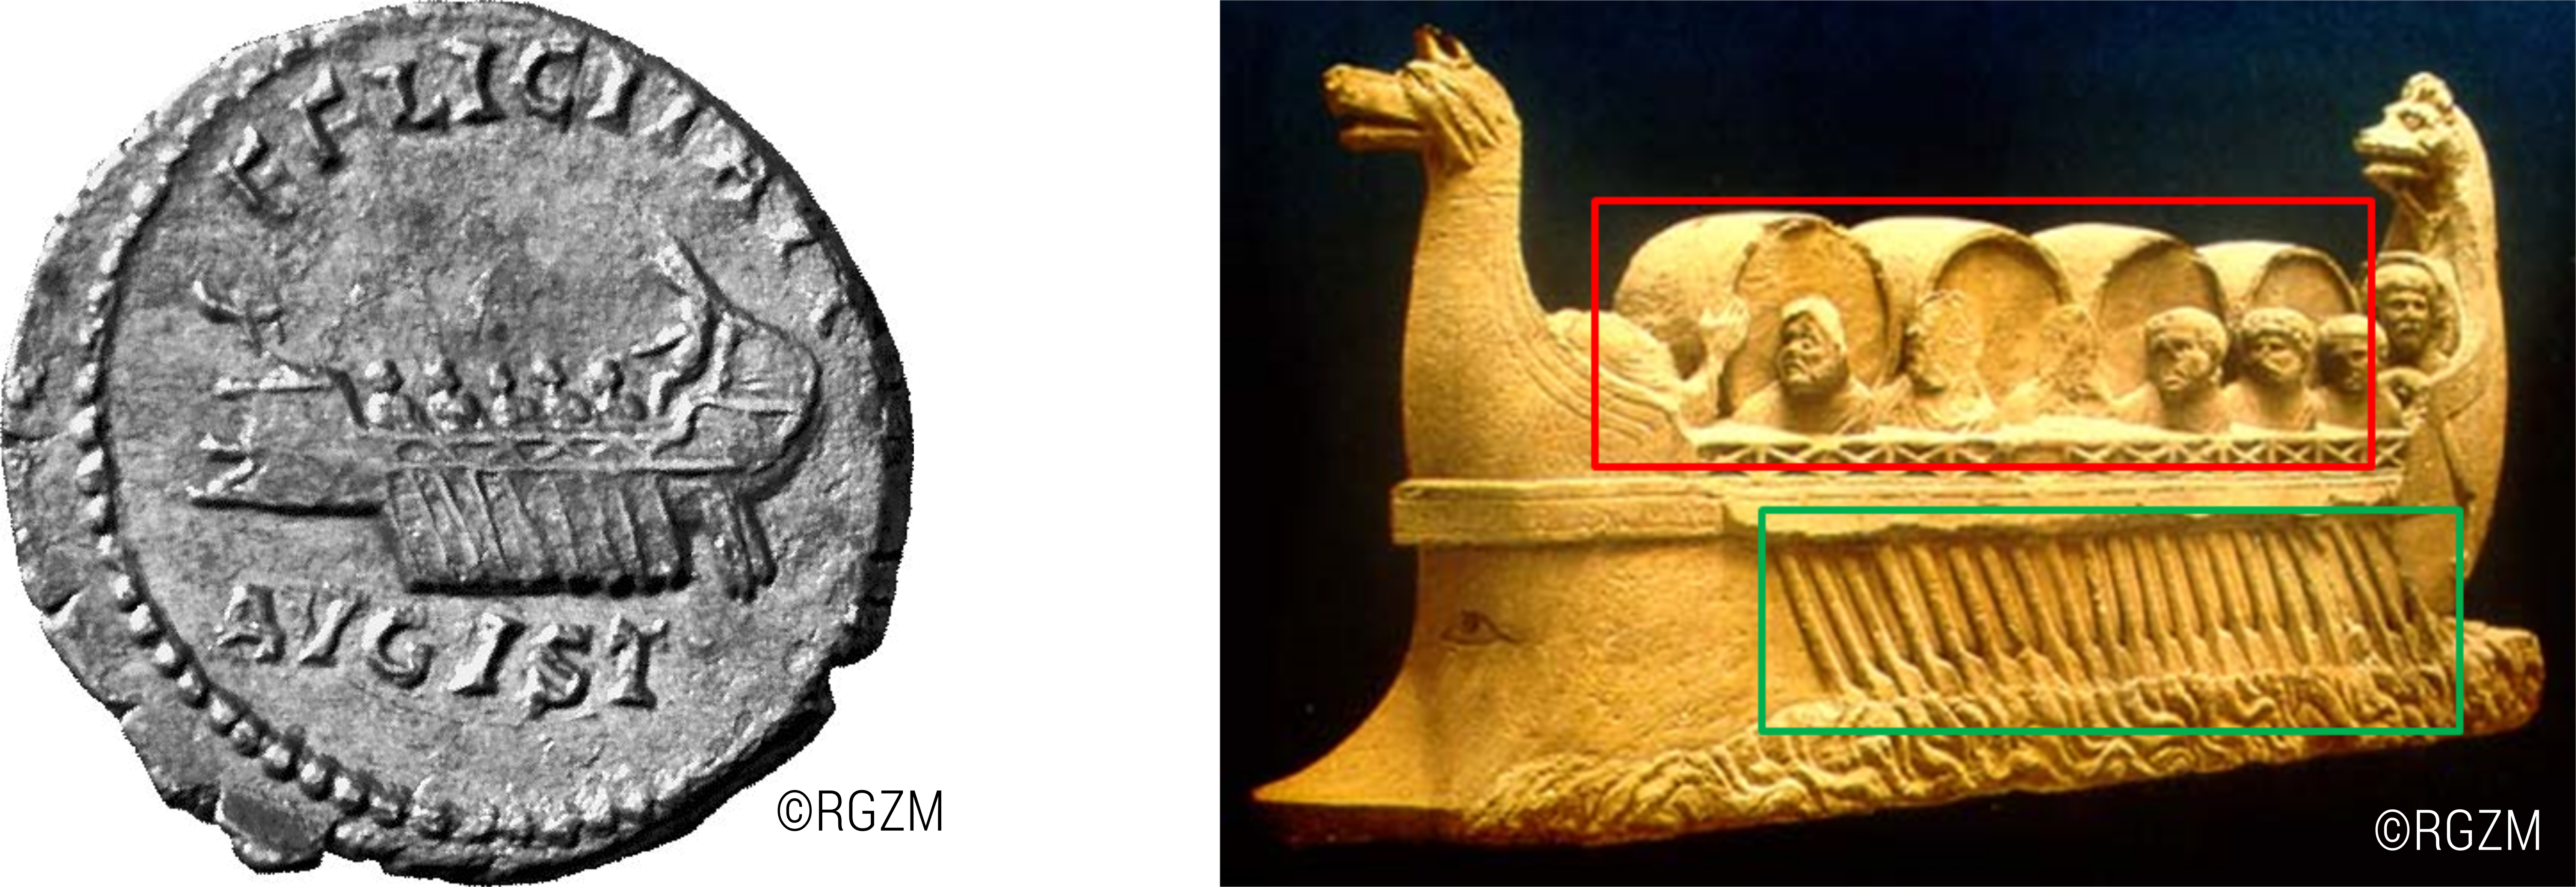 Abb. 14: links: Darstellung einer römischen
                           Münze mit Schiffsdarstellung (O41650 aus NAVIS III) und eines Monuments
                           (NeumagenMonument1 aus NAVIS II). [Eigene Darstellung, © RGZM, CC BY
                              4.0].